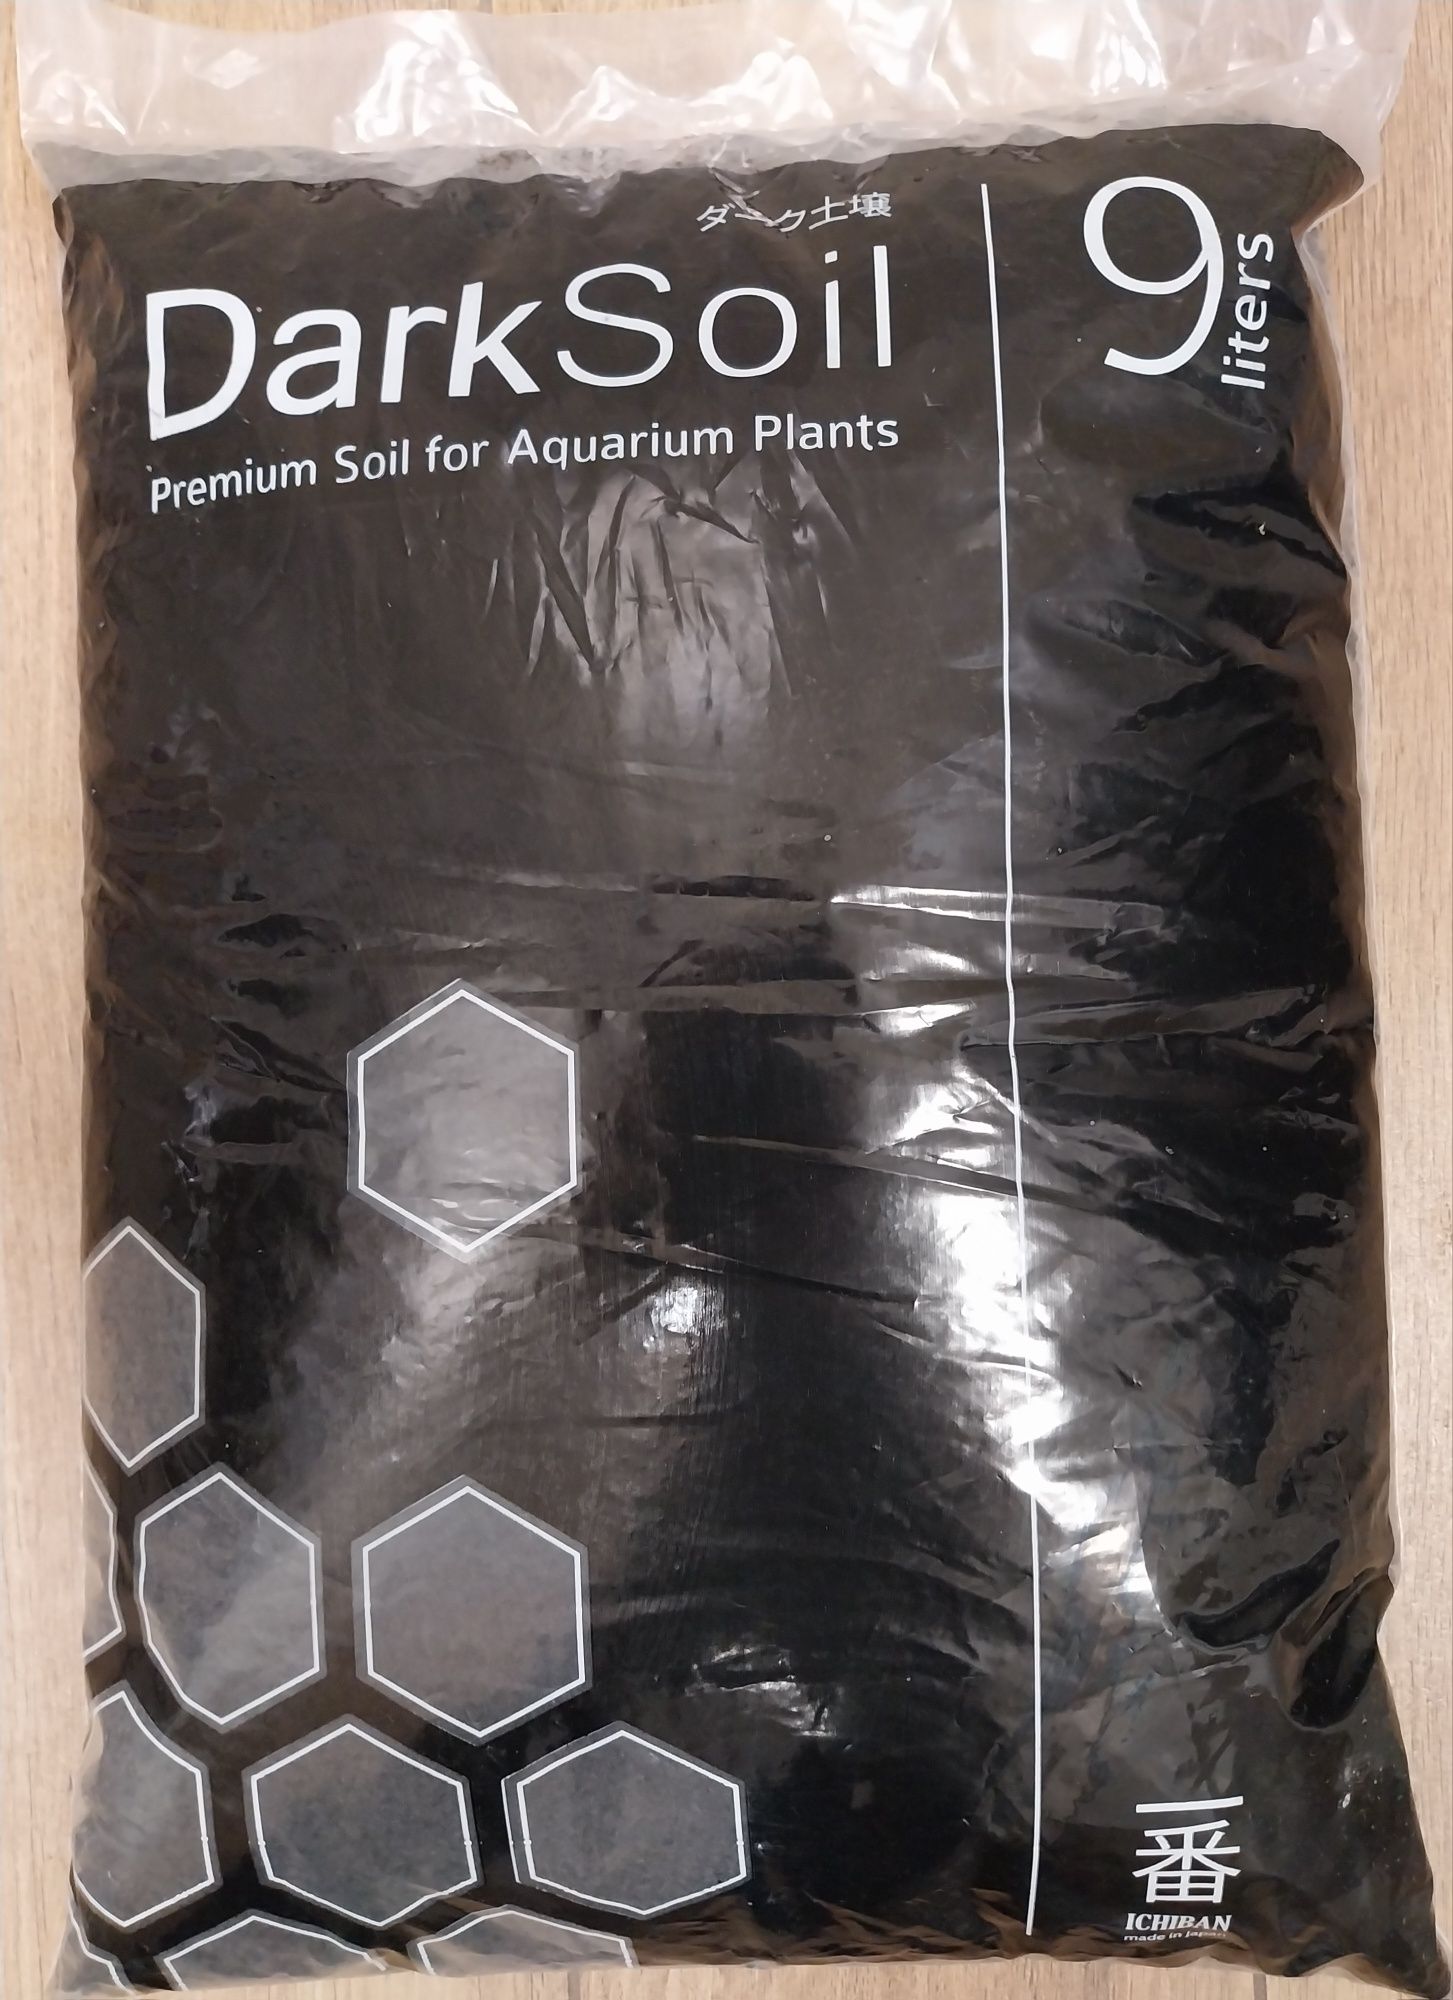 Podłoże Ichiban Dark Soil Normal 9 litrów podłoże do akwarium